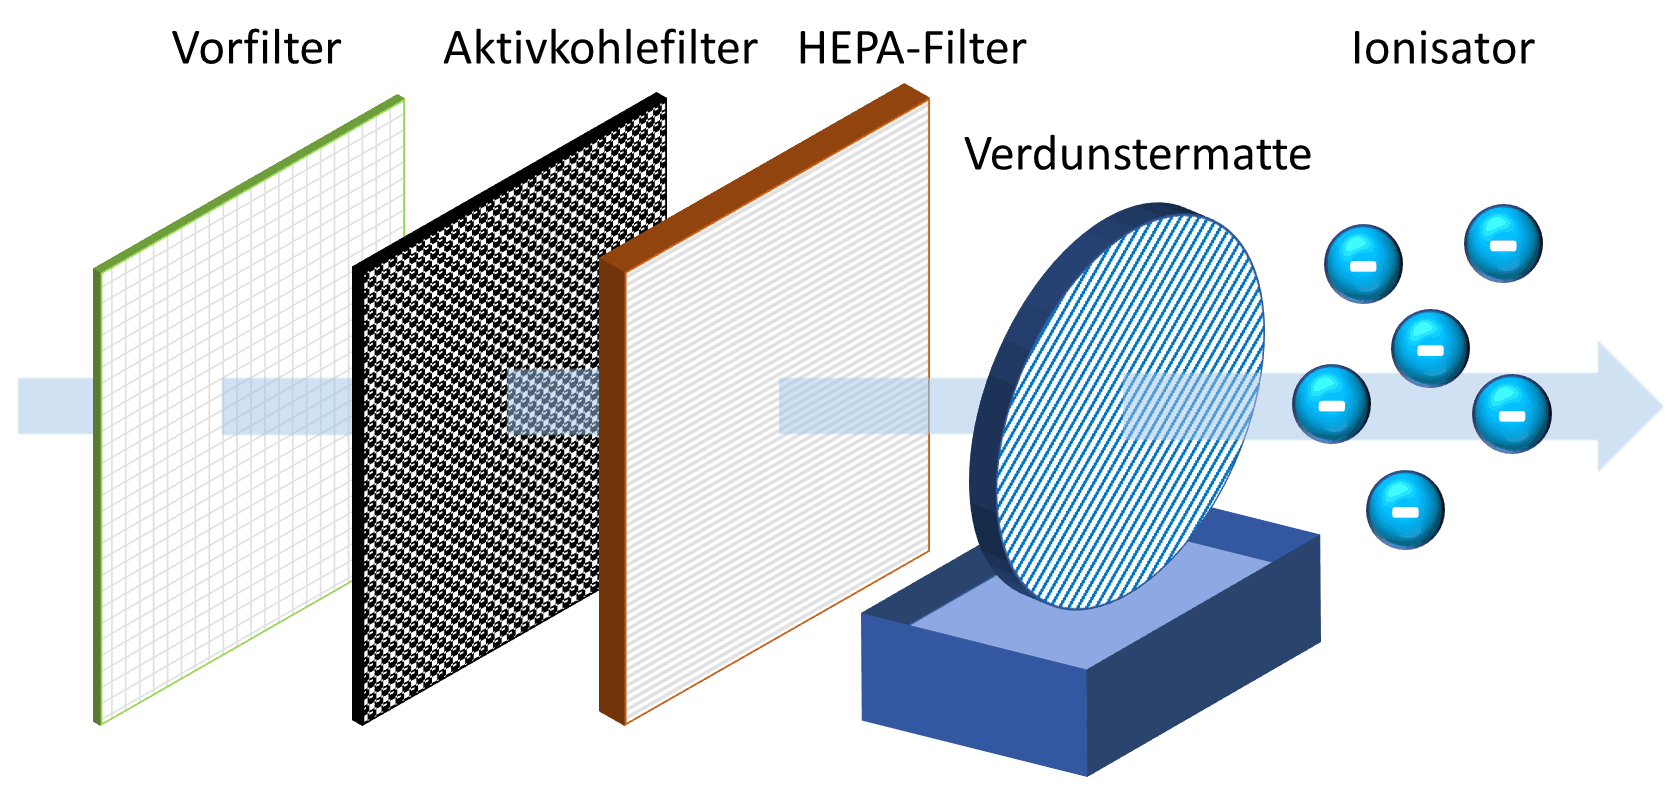 Luftstrom durch Vorfilter, Aktivkohlefilter, HEPA-Filter, Verdunstermatte und Ionisator